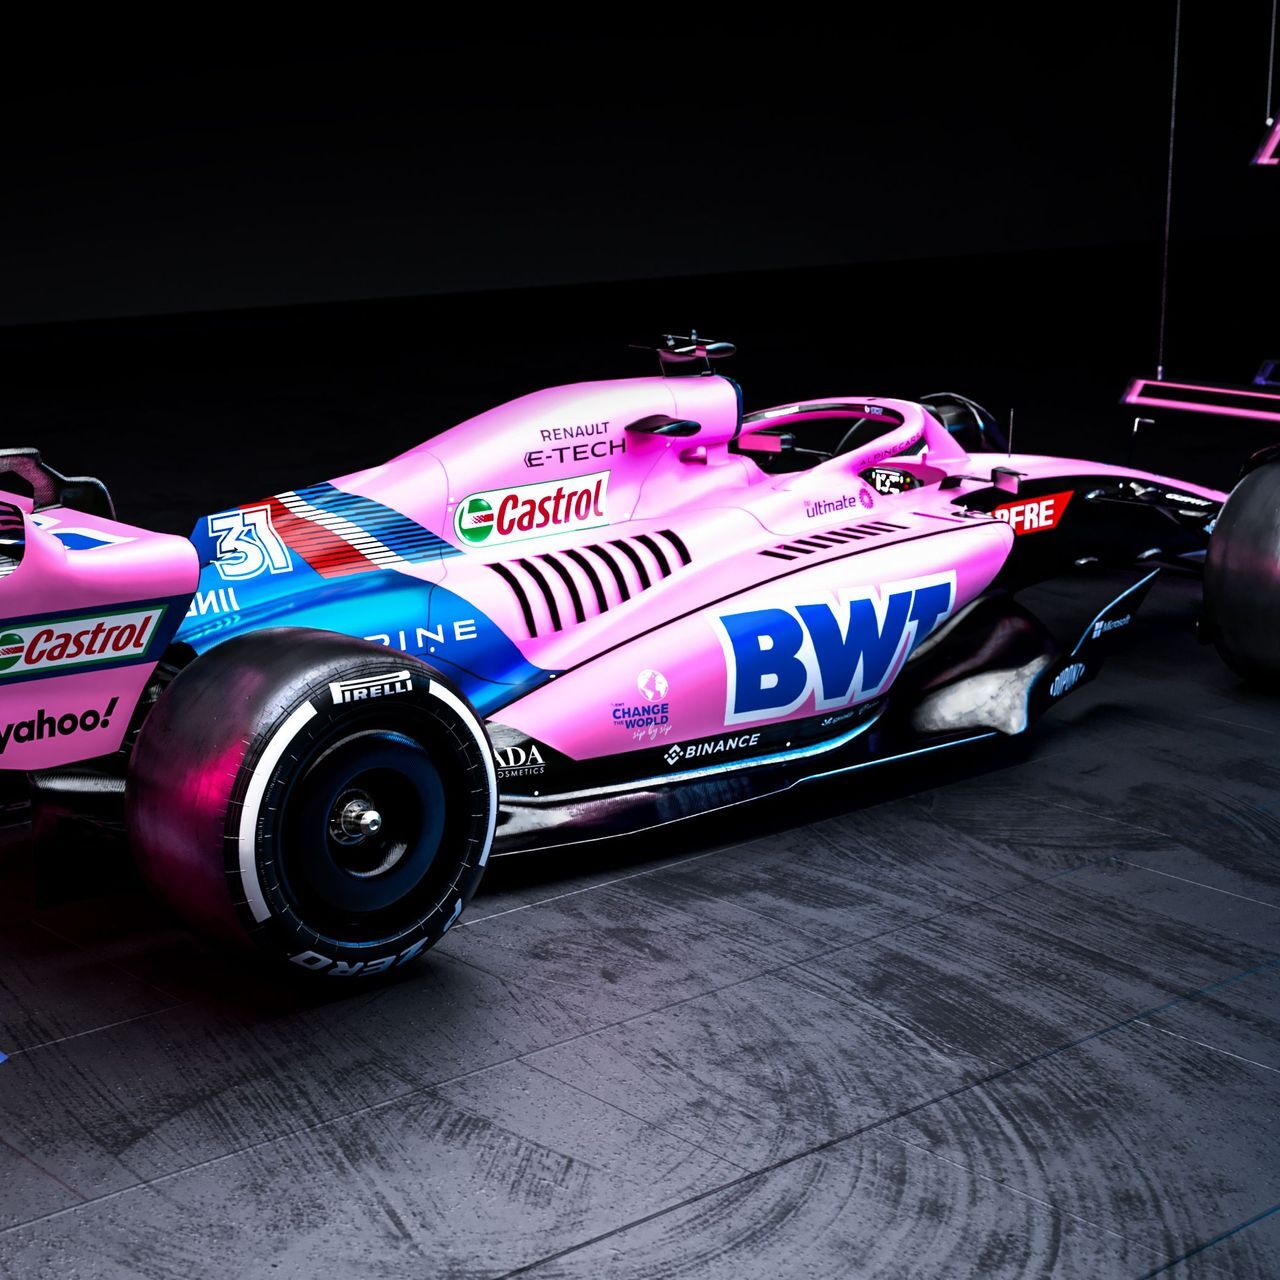 La voiture du BWT Alpine F1 Team débutera la saison 2022 de Formule 1 dans une livrée rose